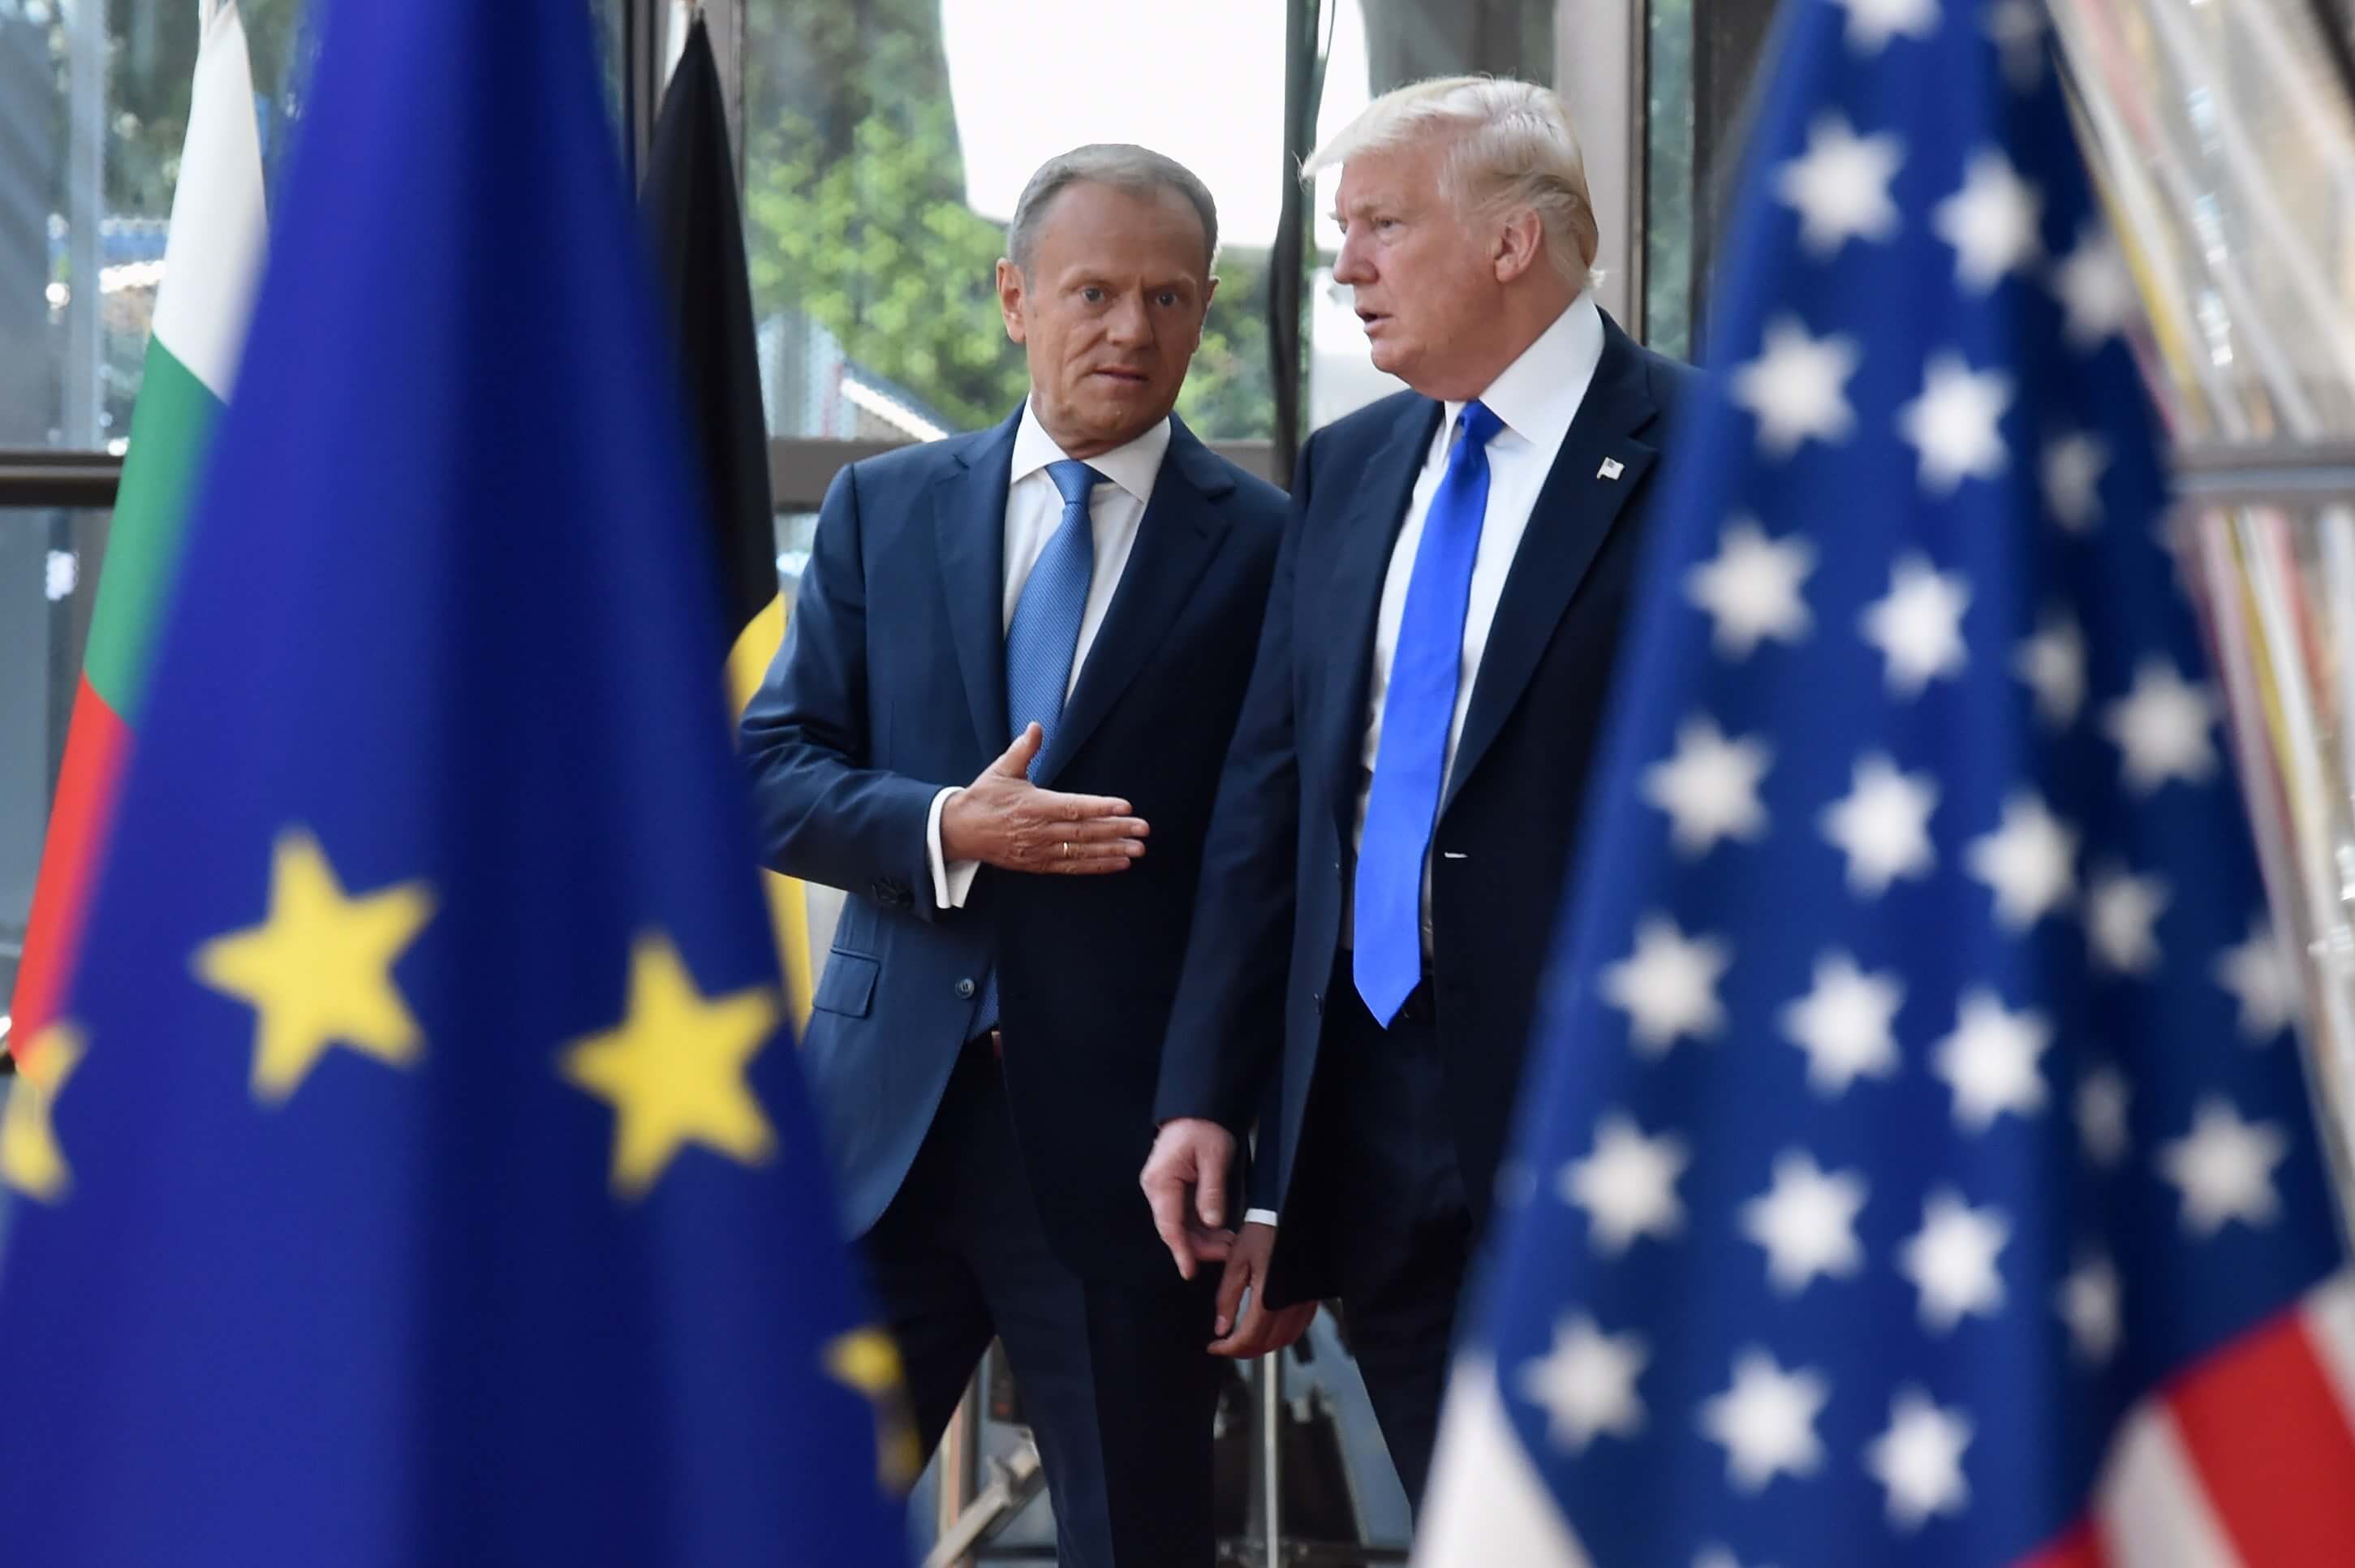 EU president Donald Tusk ontvangt de Amerikaanse president Donald Trump, mei 2017. © European Union 2017